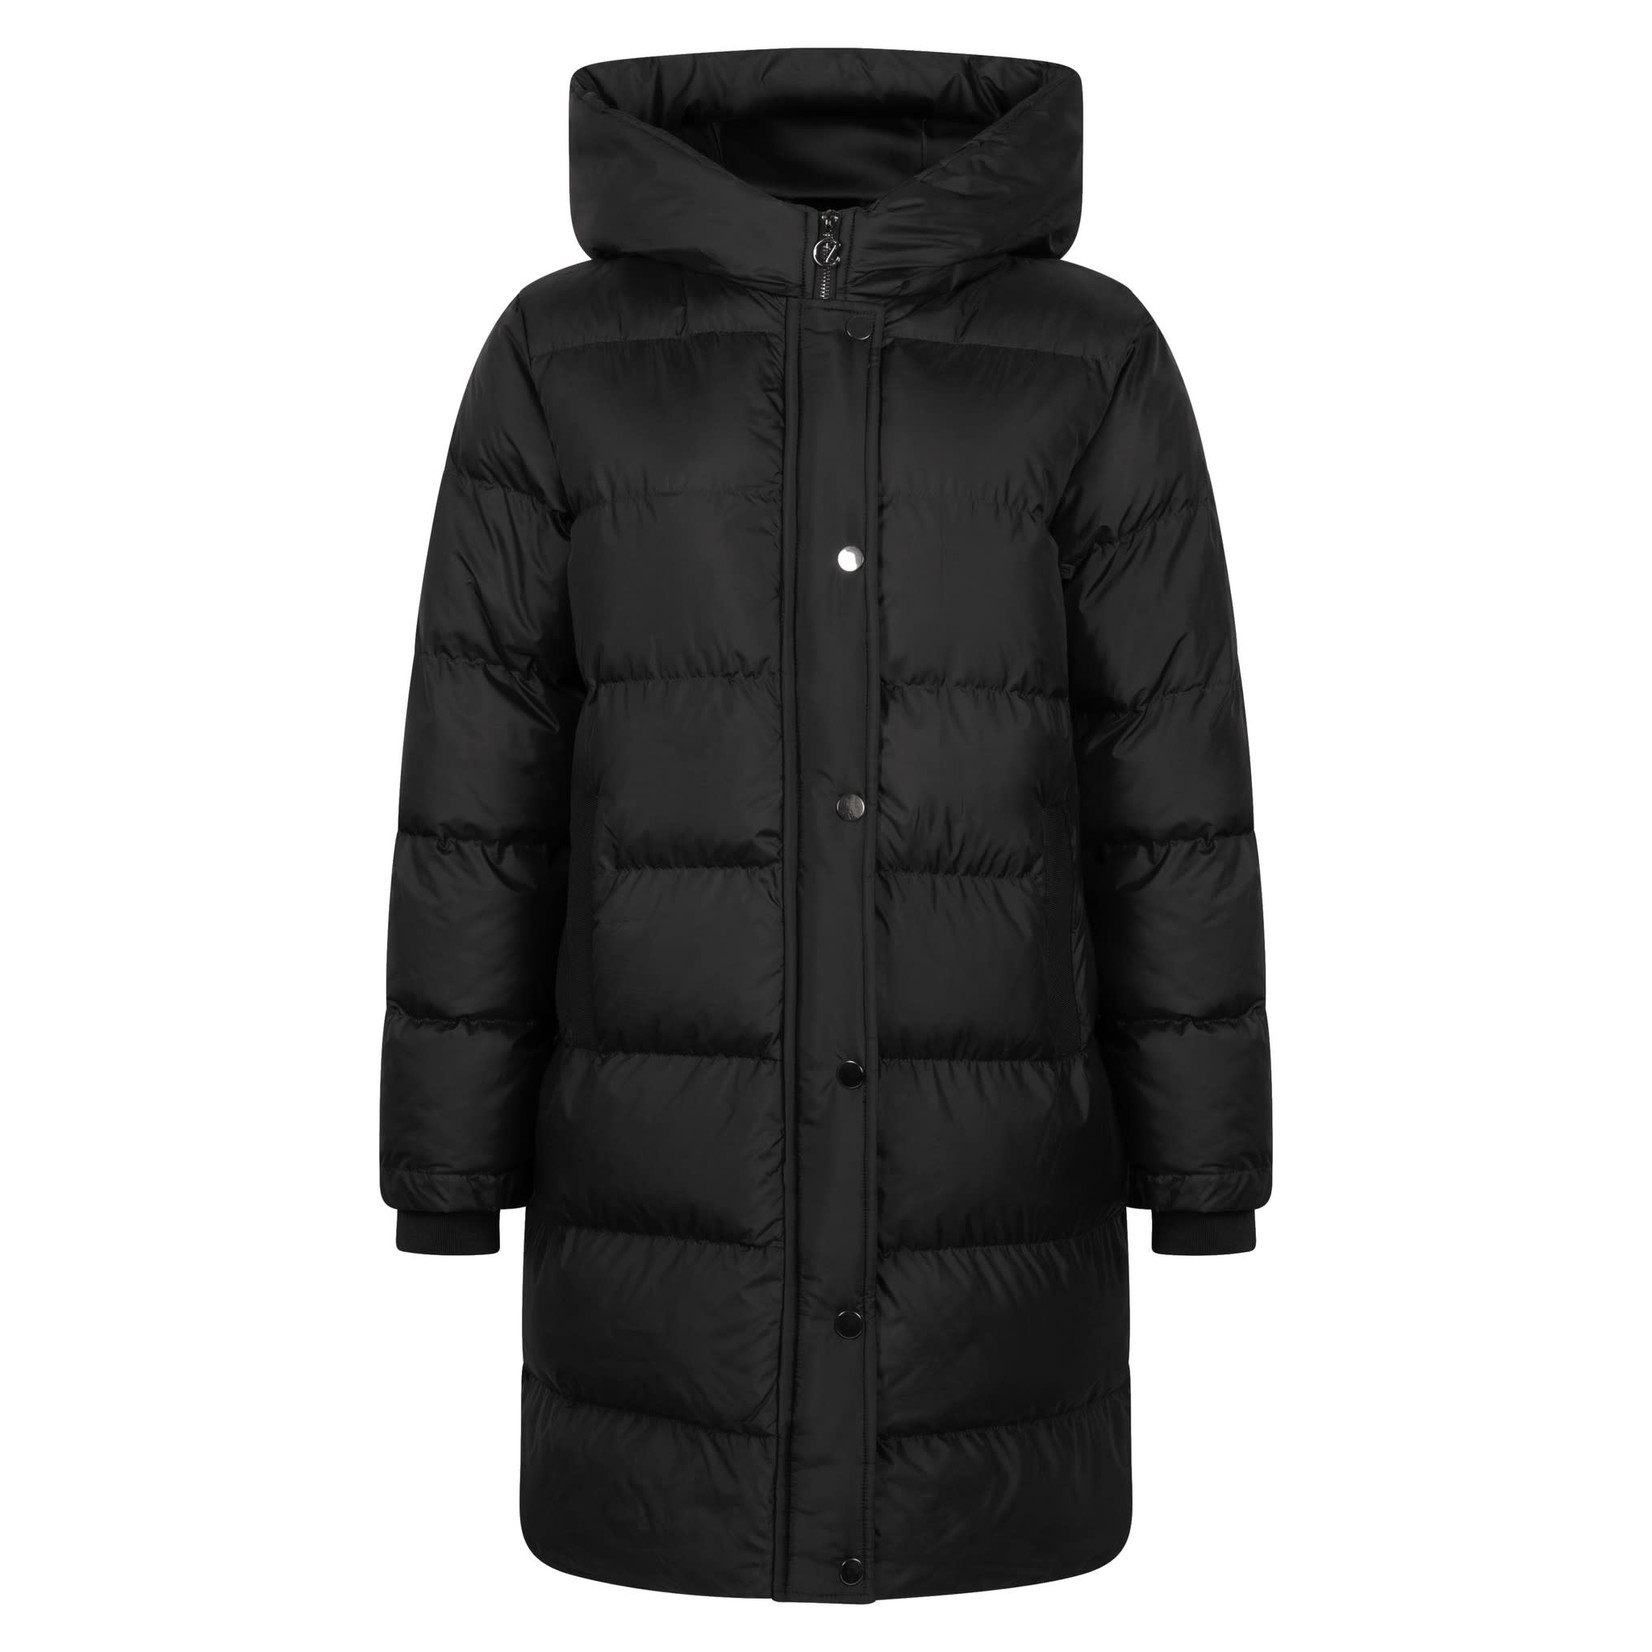 Mooie warme jas kopen voor winter Zoso kopen - ZusenZoFashion - Zus&Zo Heemstede